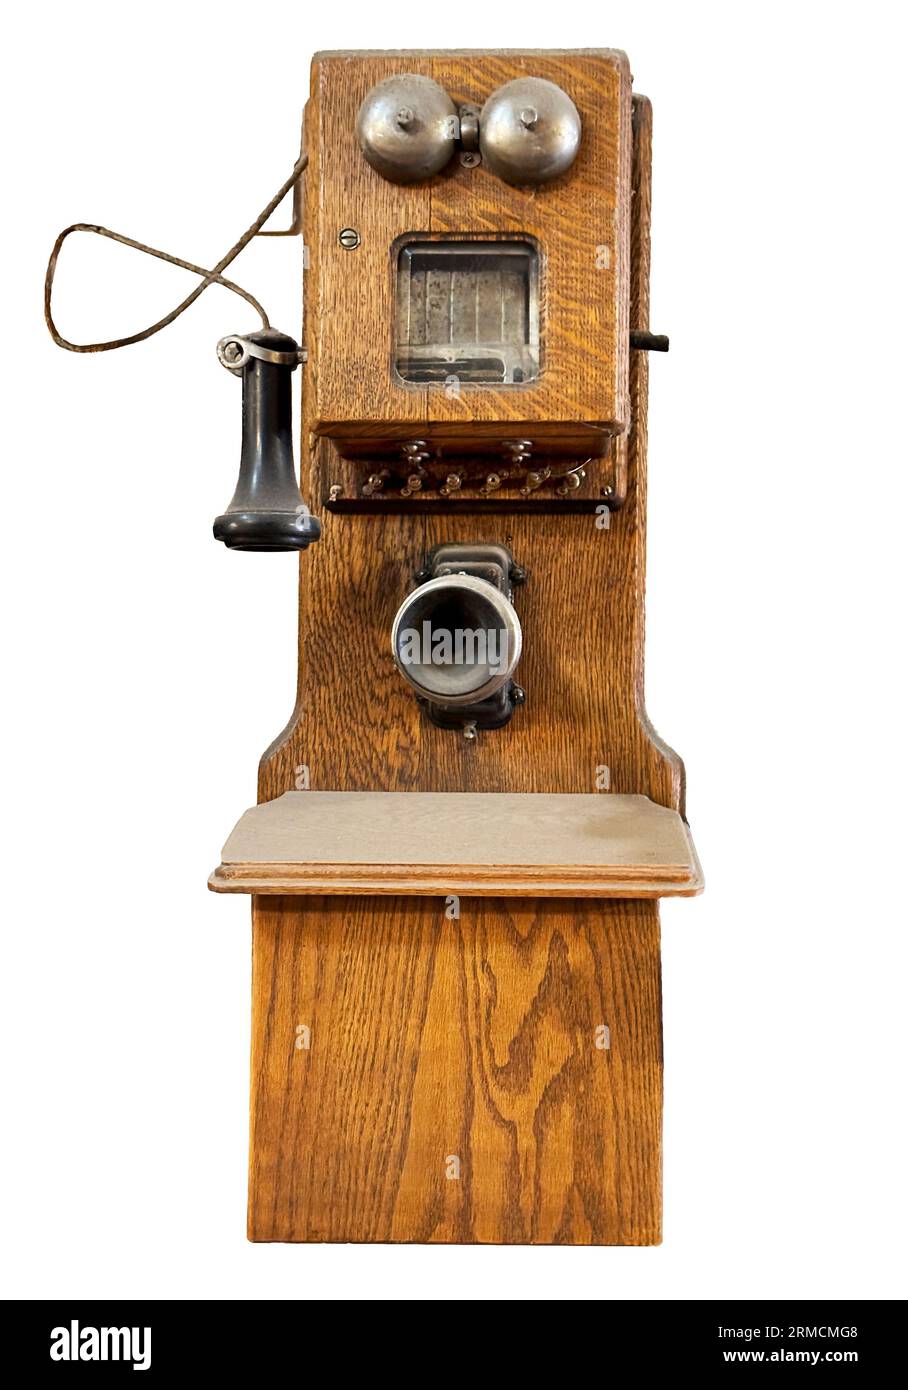 Antikes Wandtelefon in Eichenholzschrank mit Mundstück, Ohrstöpseln und zwei Glocken für das Klingelgerät. Sehen Sie sich die isolierte Nahaufnahme direkt vor dem Telefon an. Stockfoto